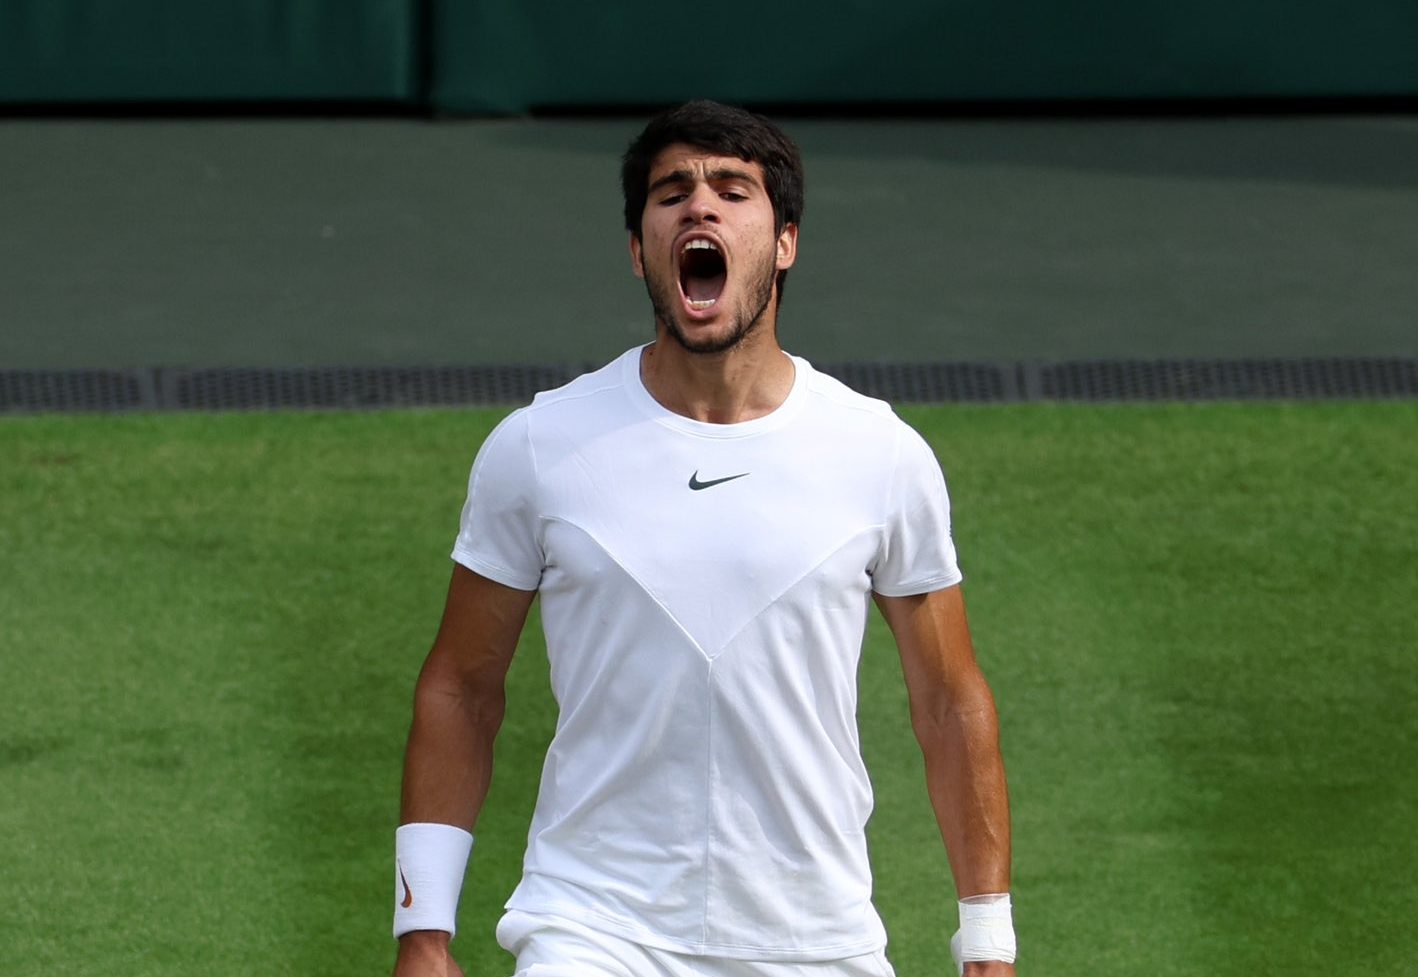 Carlos Alcaraz wins Wimbledon 2023: What records did he break?